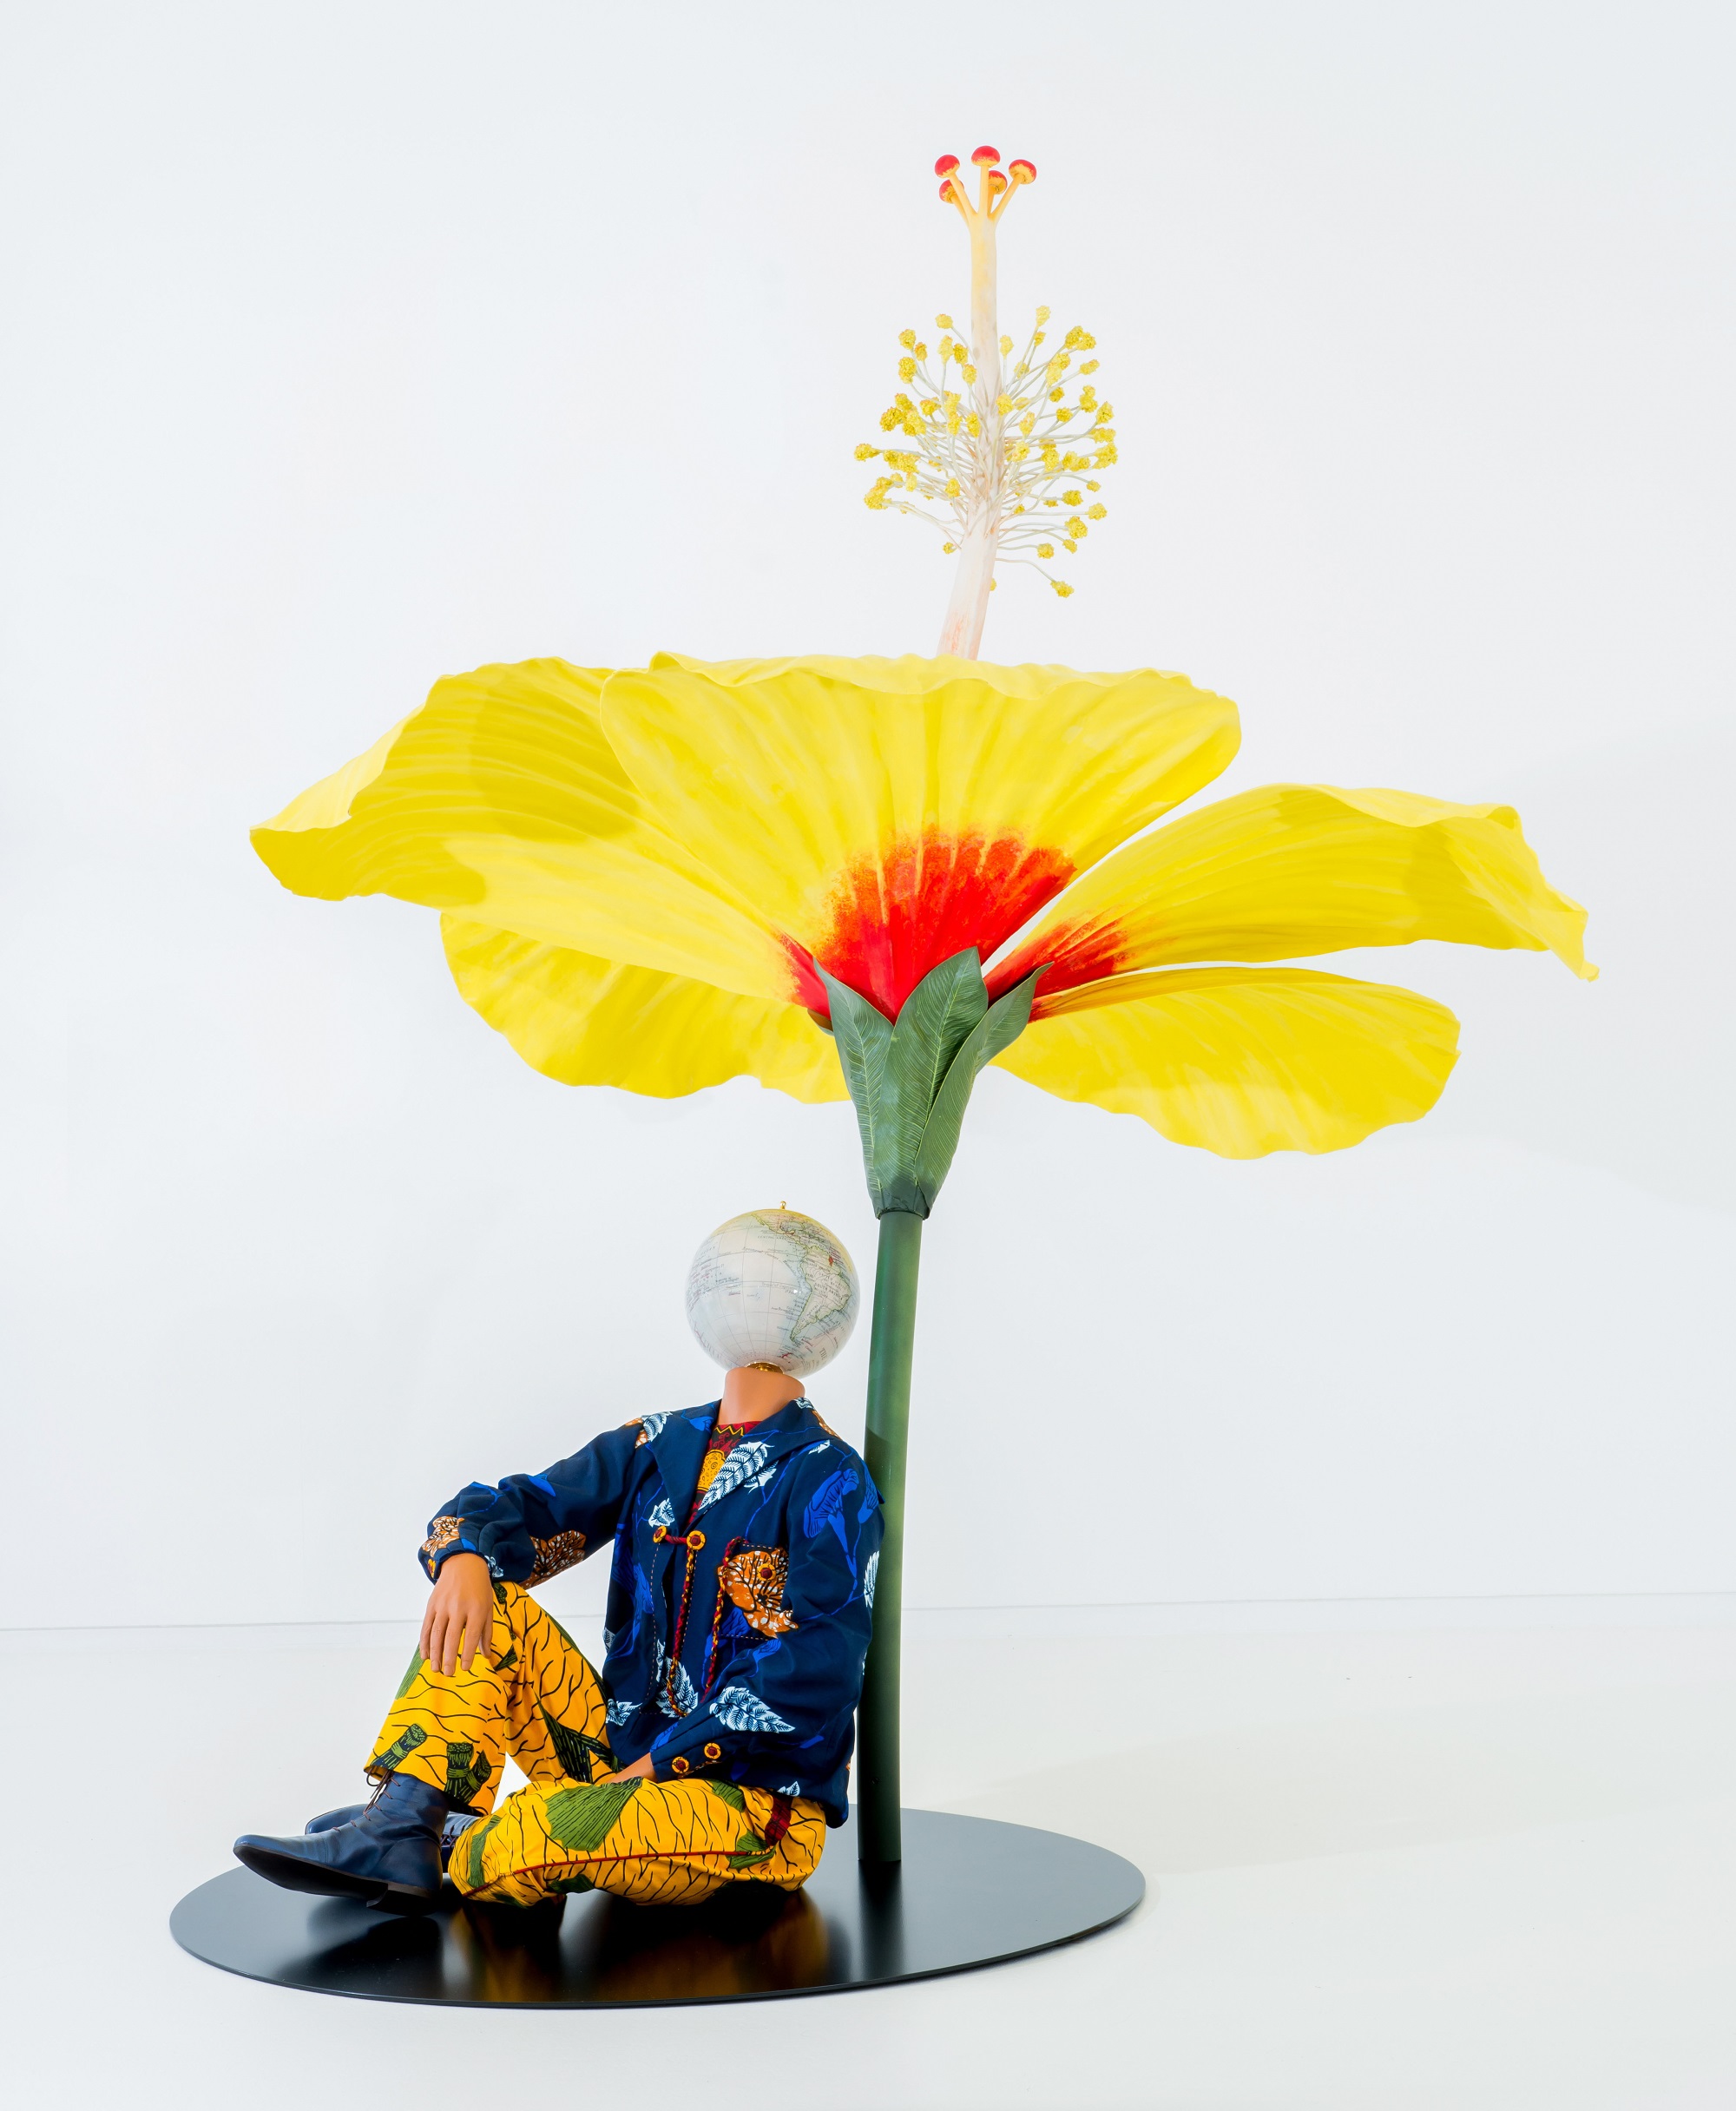 インカ・ショニバレCBE
《ハイビスカスの下に座る少年》
2015年
Yinka Shonibare CBE Studio, London
Pearl Lam Galleries, Hong Kong, Singapore and Shanghai
Photo Thomas Liu